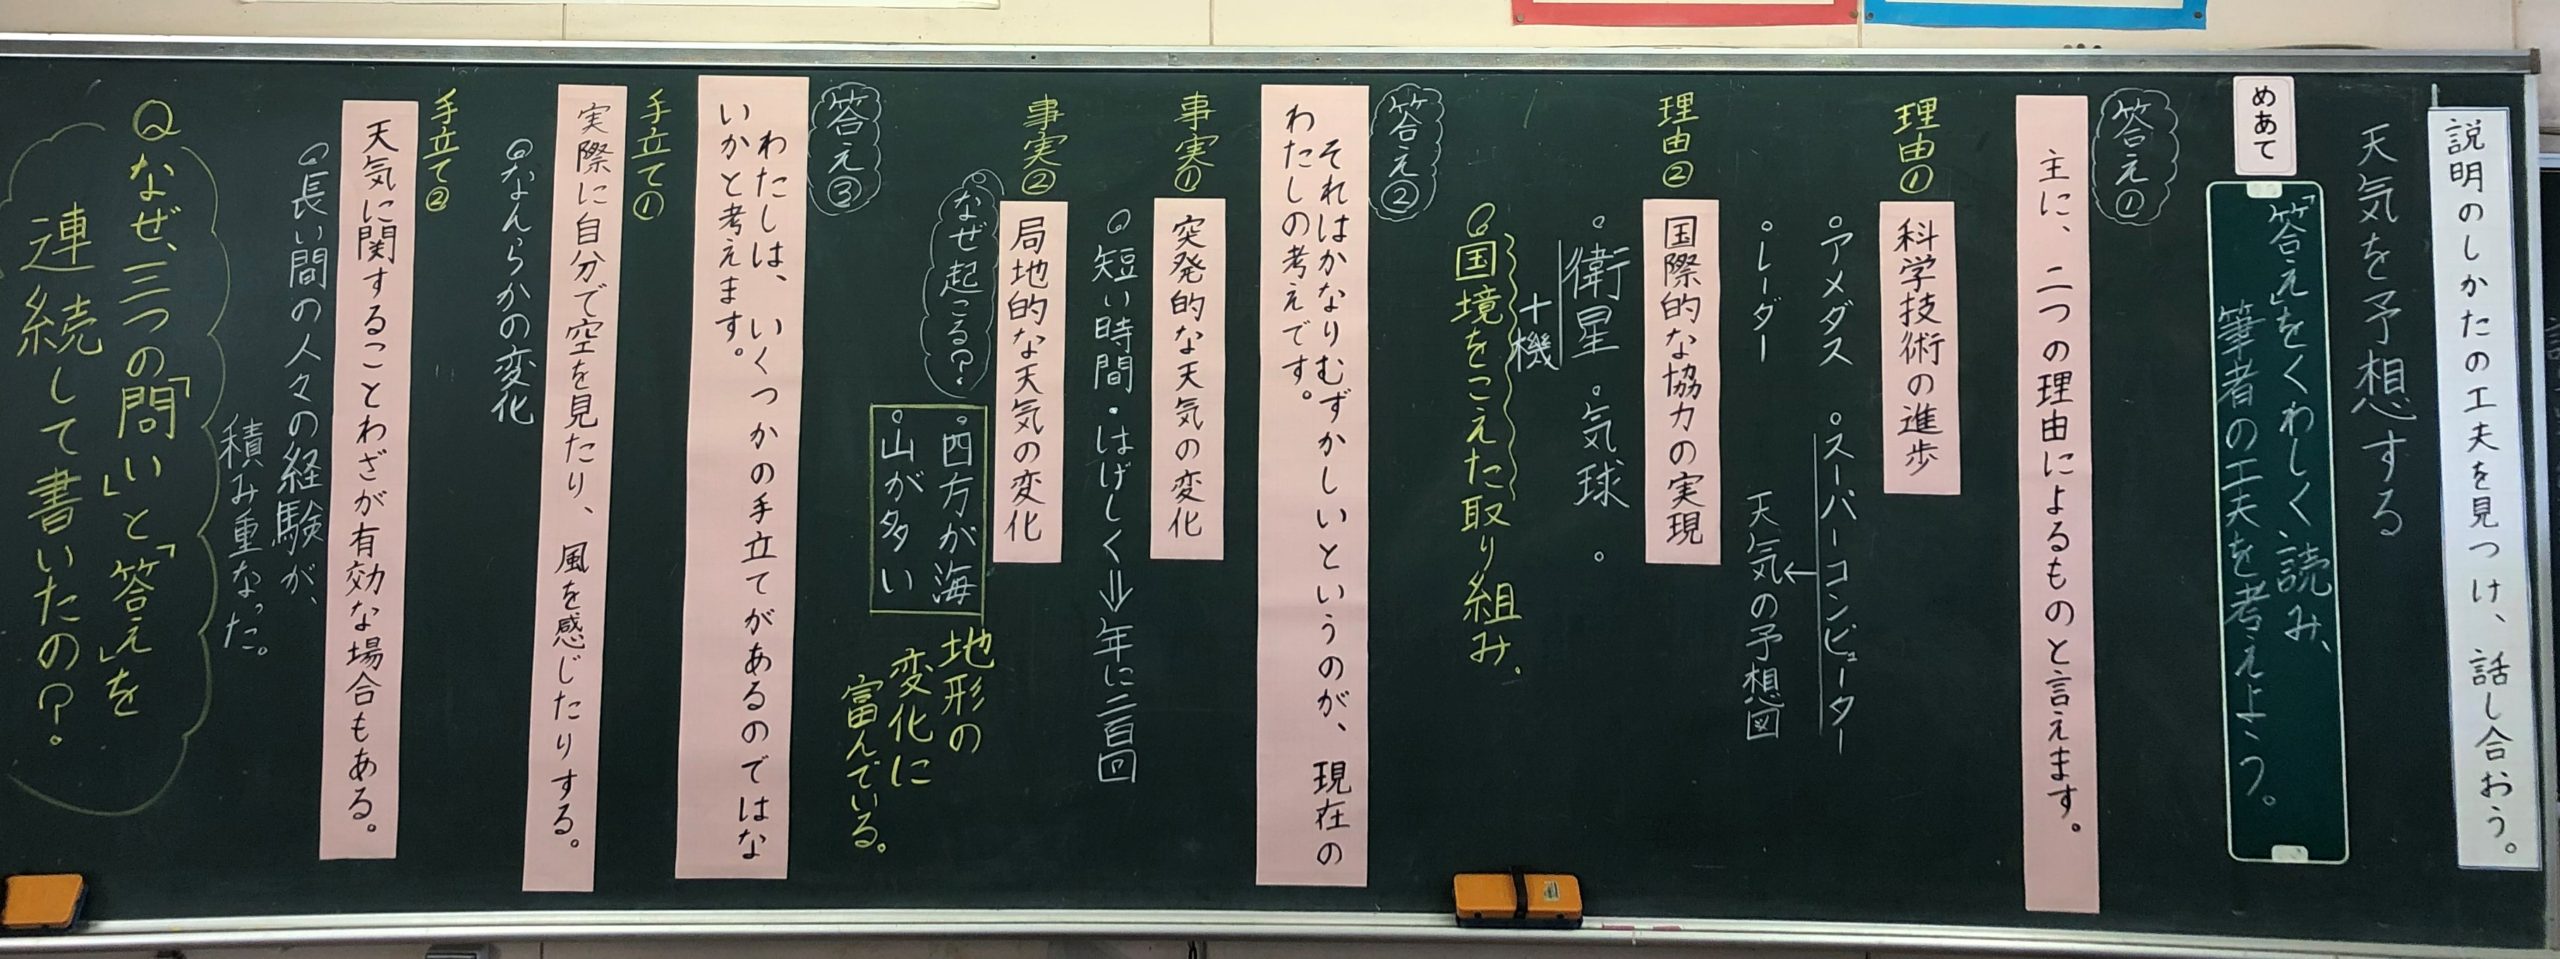 5年生国語 天気を予想する 黒板log 黒板log